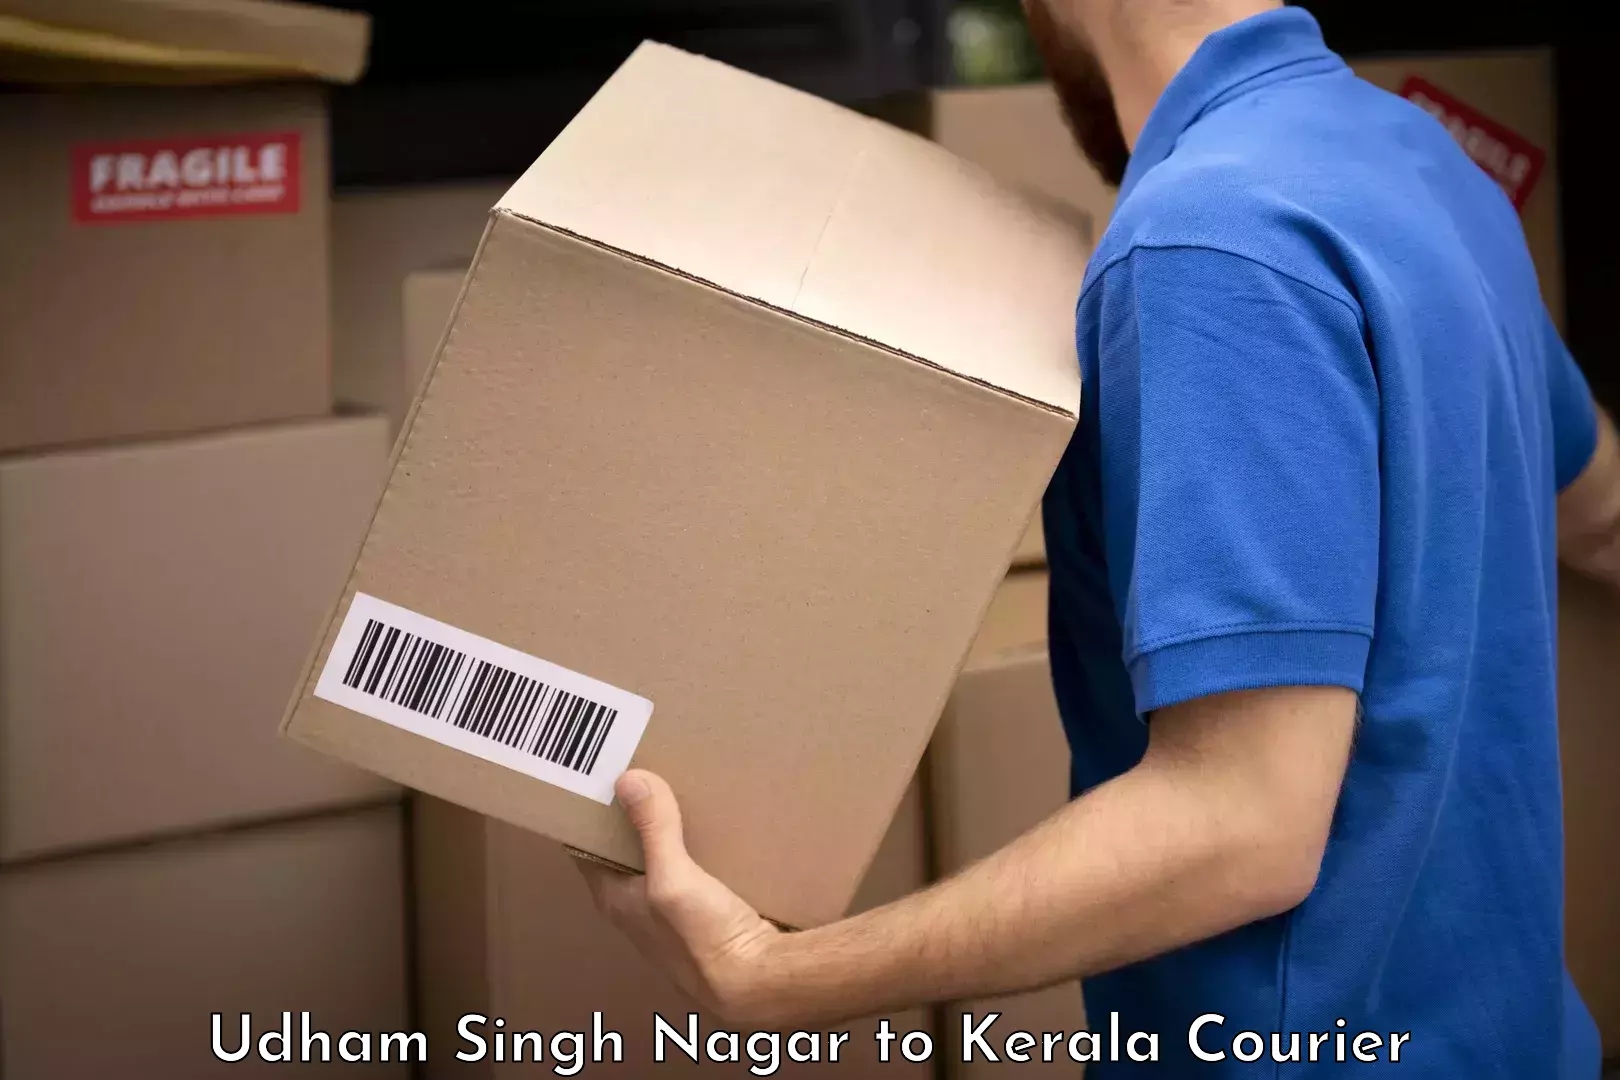 Baggage shipping optimization Udham Singh Nagar to Kerala